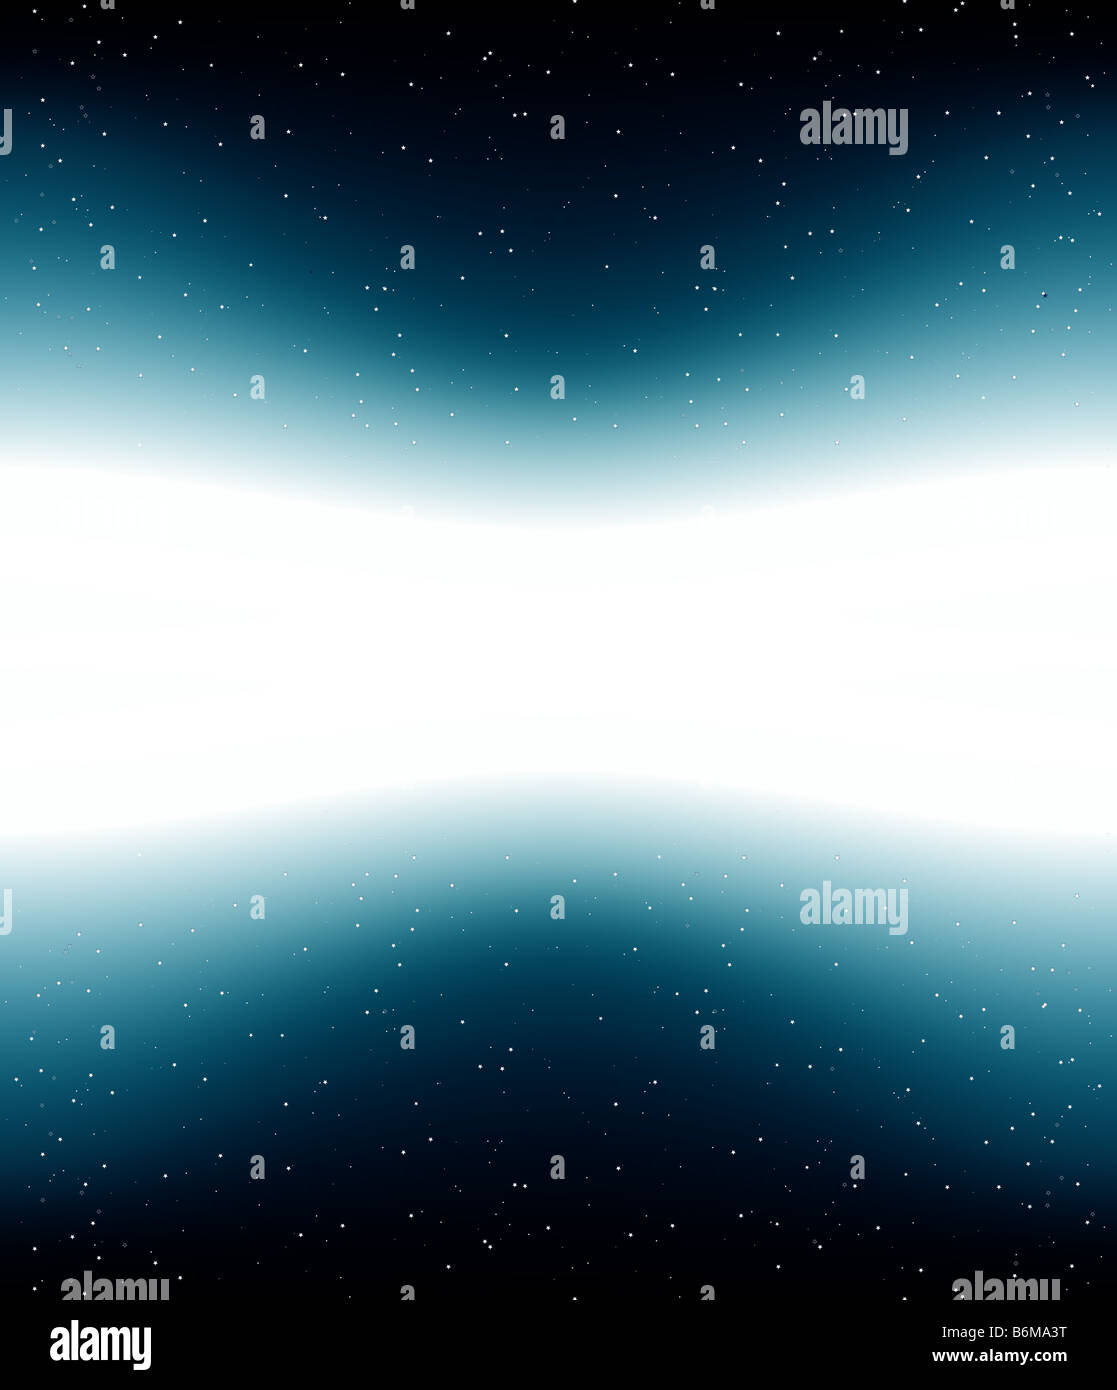 Vector illustration d'un ciel plein d'étoiles univers thème avec copie espace blanc au milieu de bande Banque D'Images